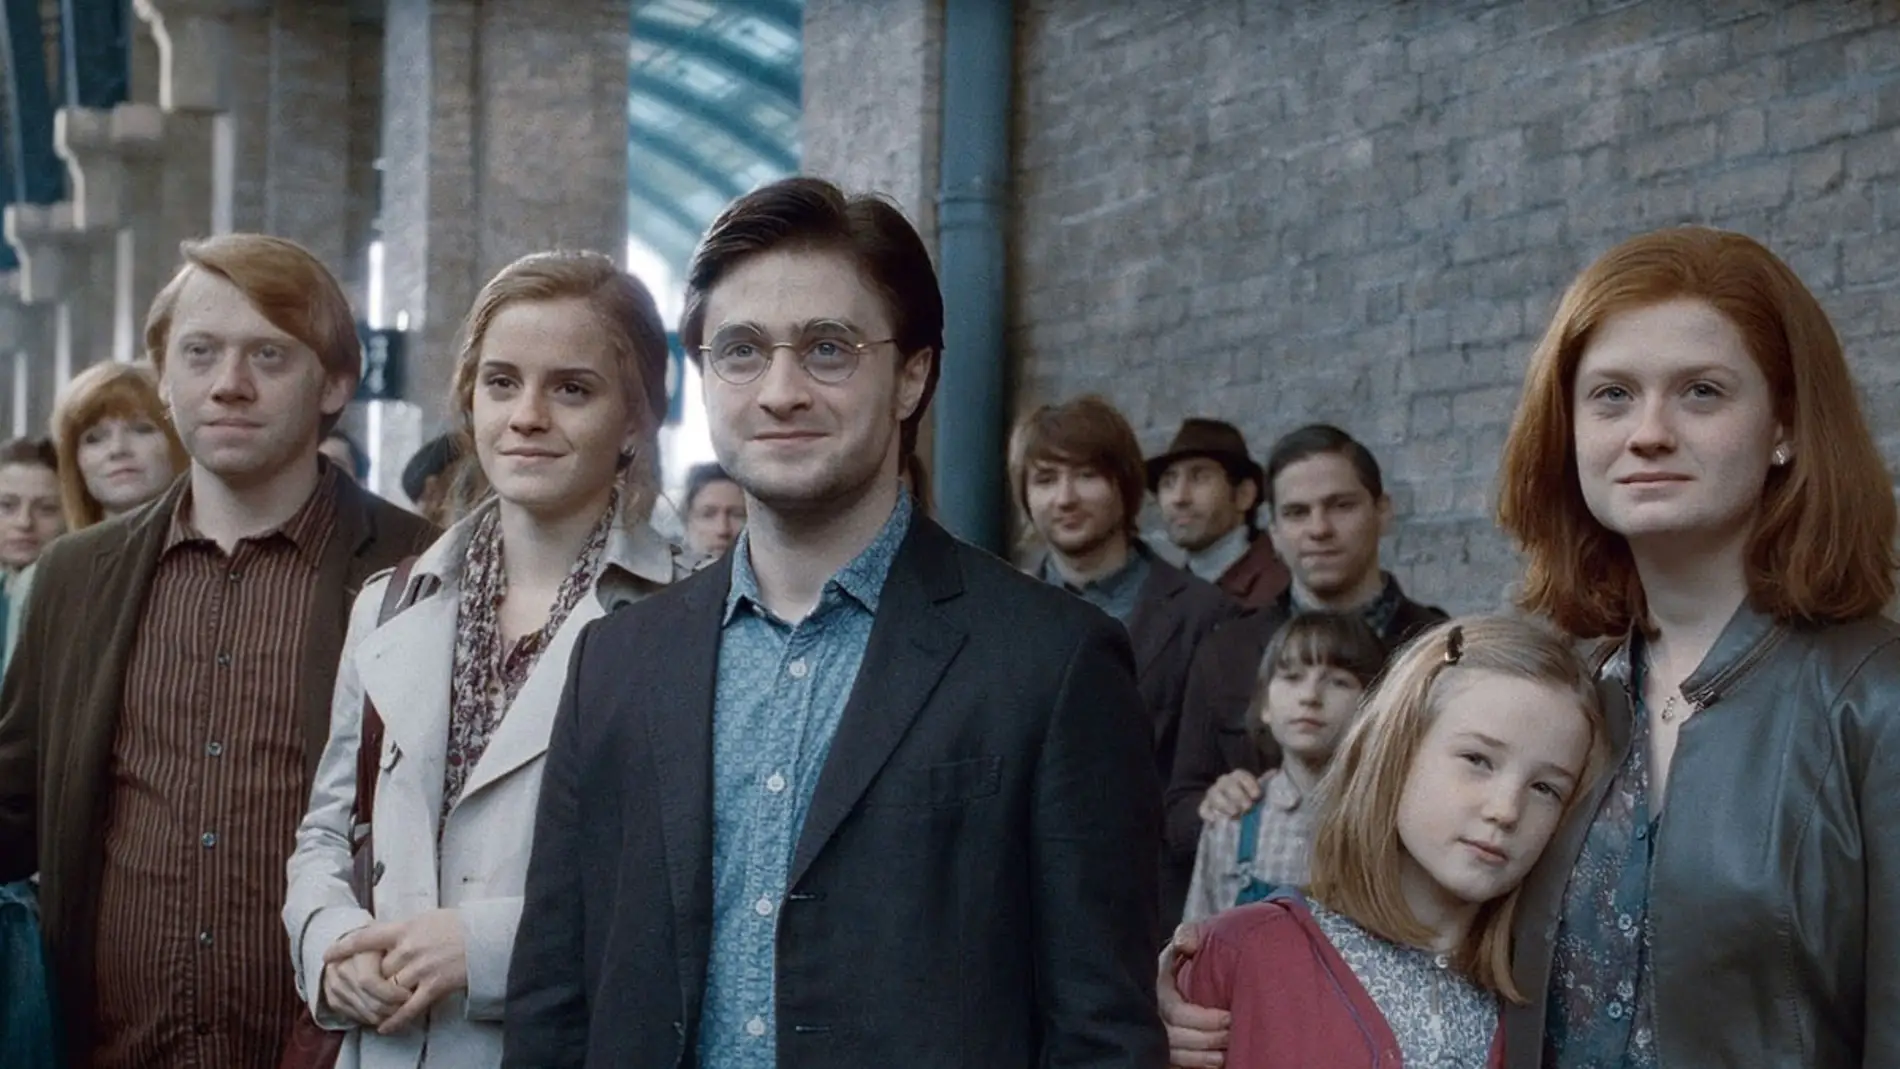 Escupir lanzar habilidad Test potterhead: ¿A qué familia de 'Harry Potter' perteneces? Descubre tu  herencia mágica